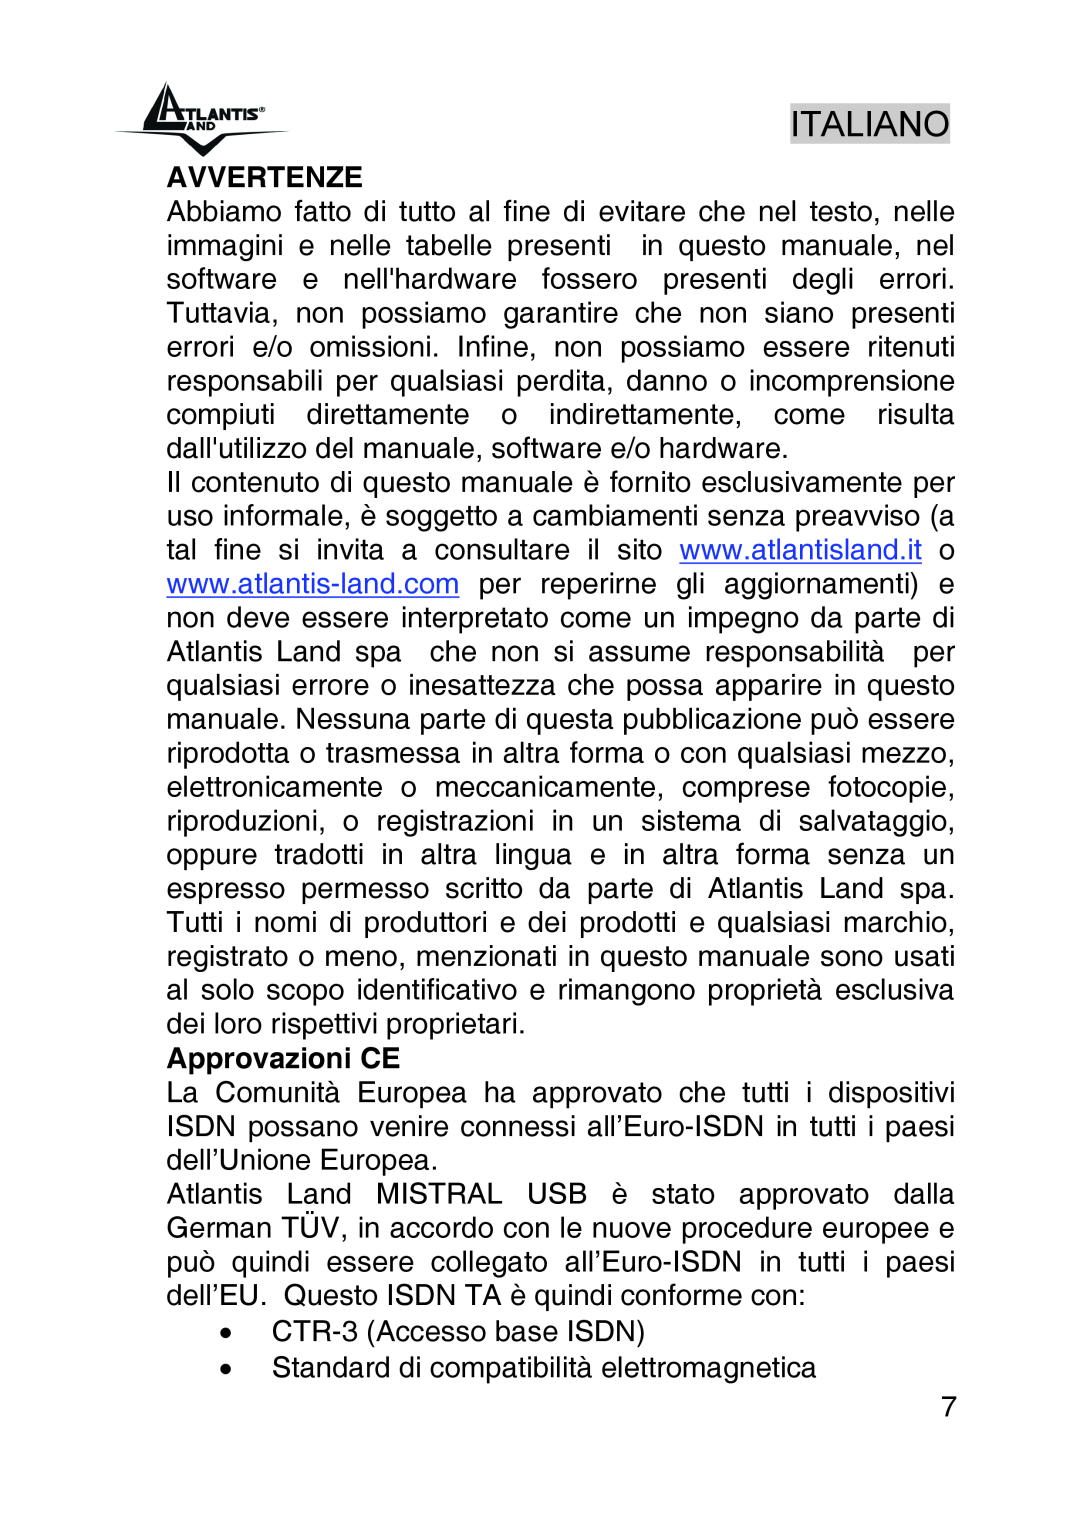 Atlantis Land A01-IU1 manual Italiano, Avvertenze, Approvazioni CE 